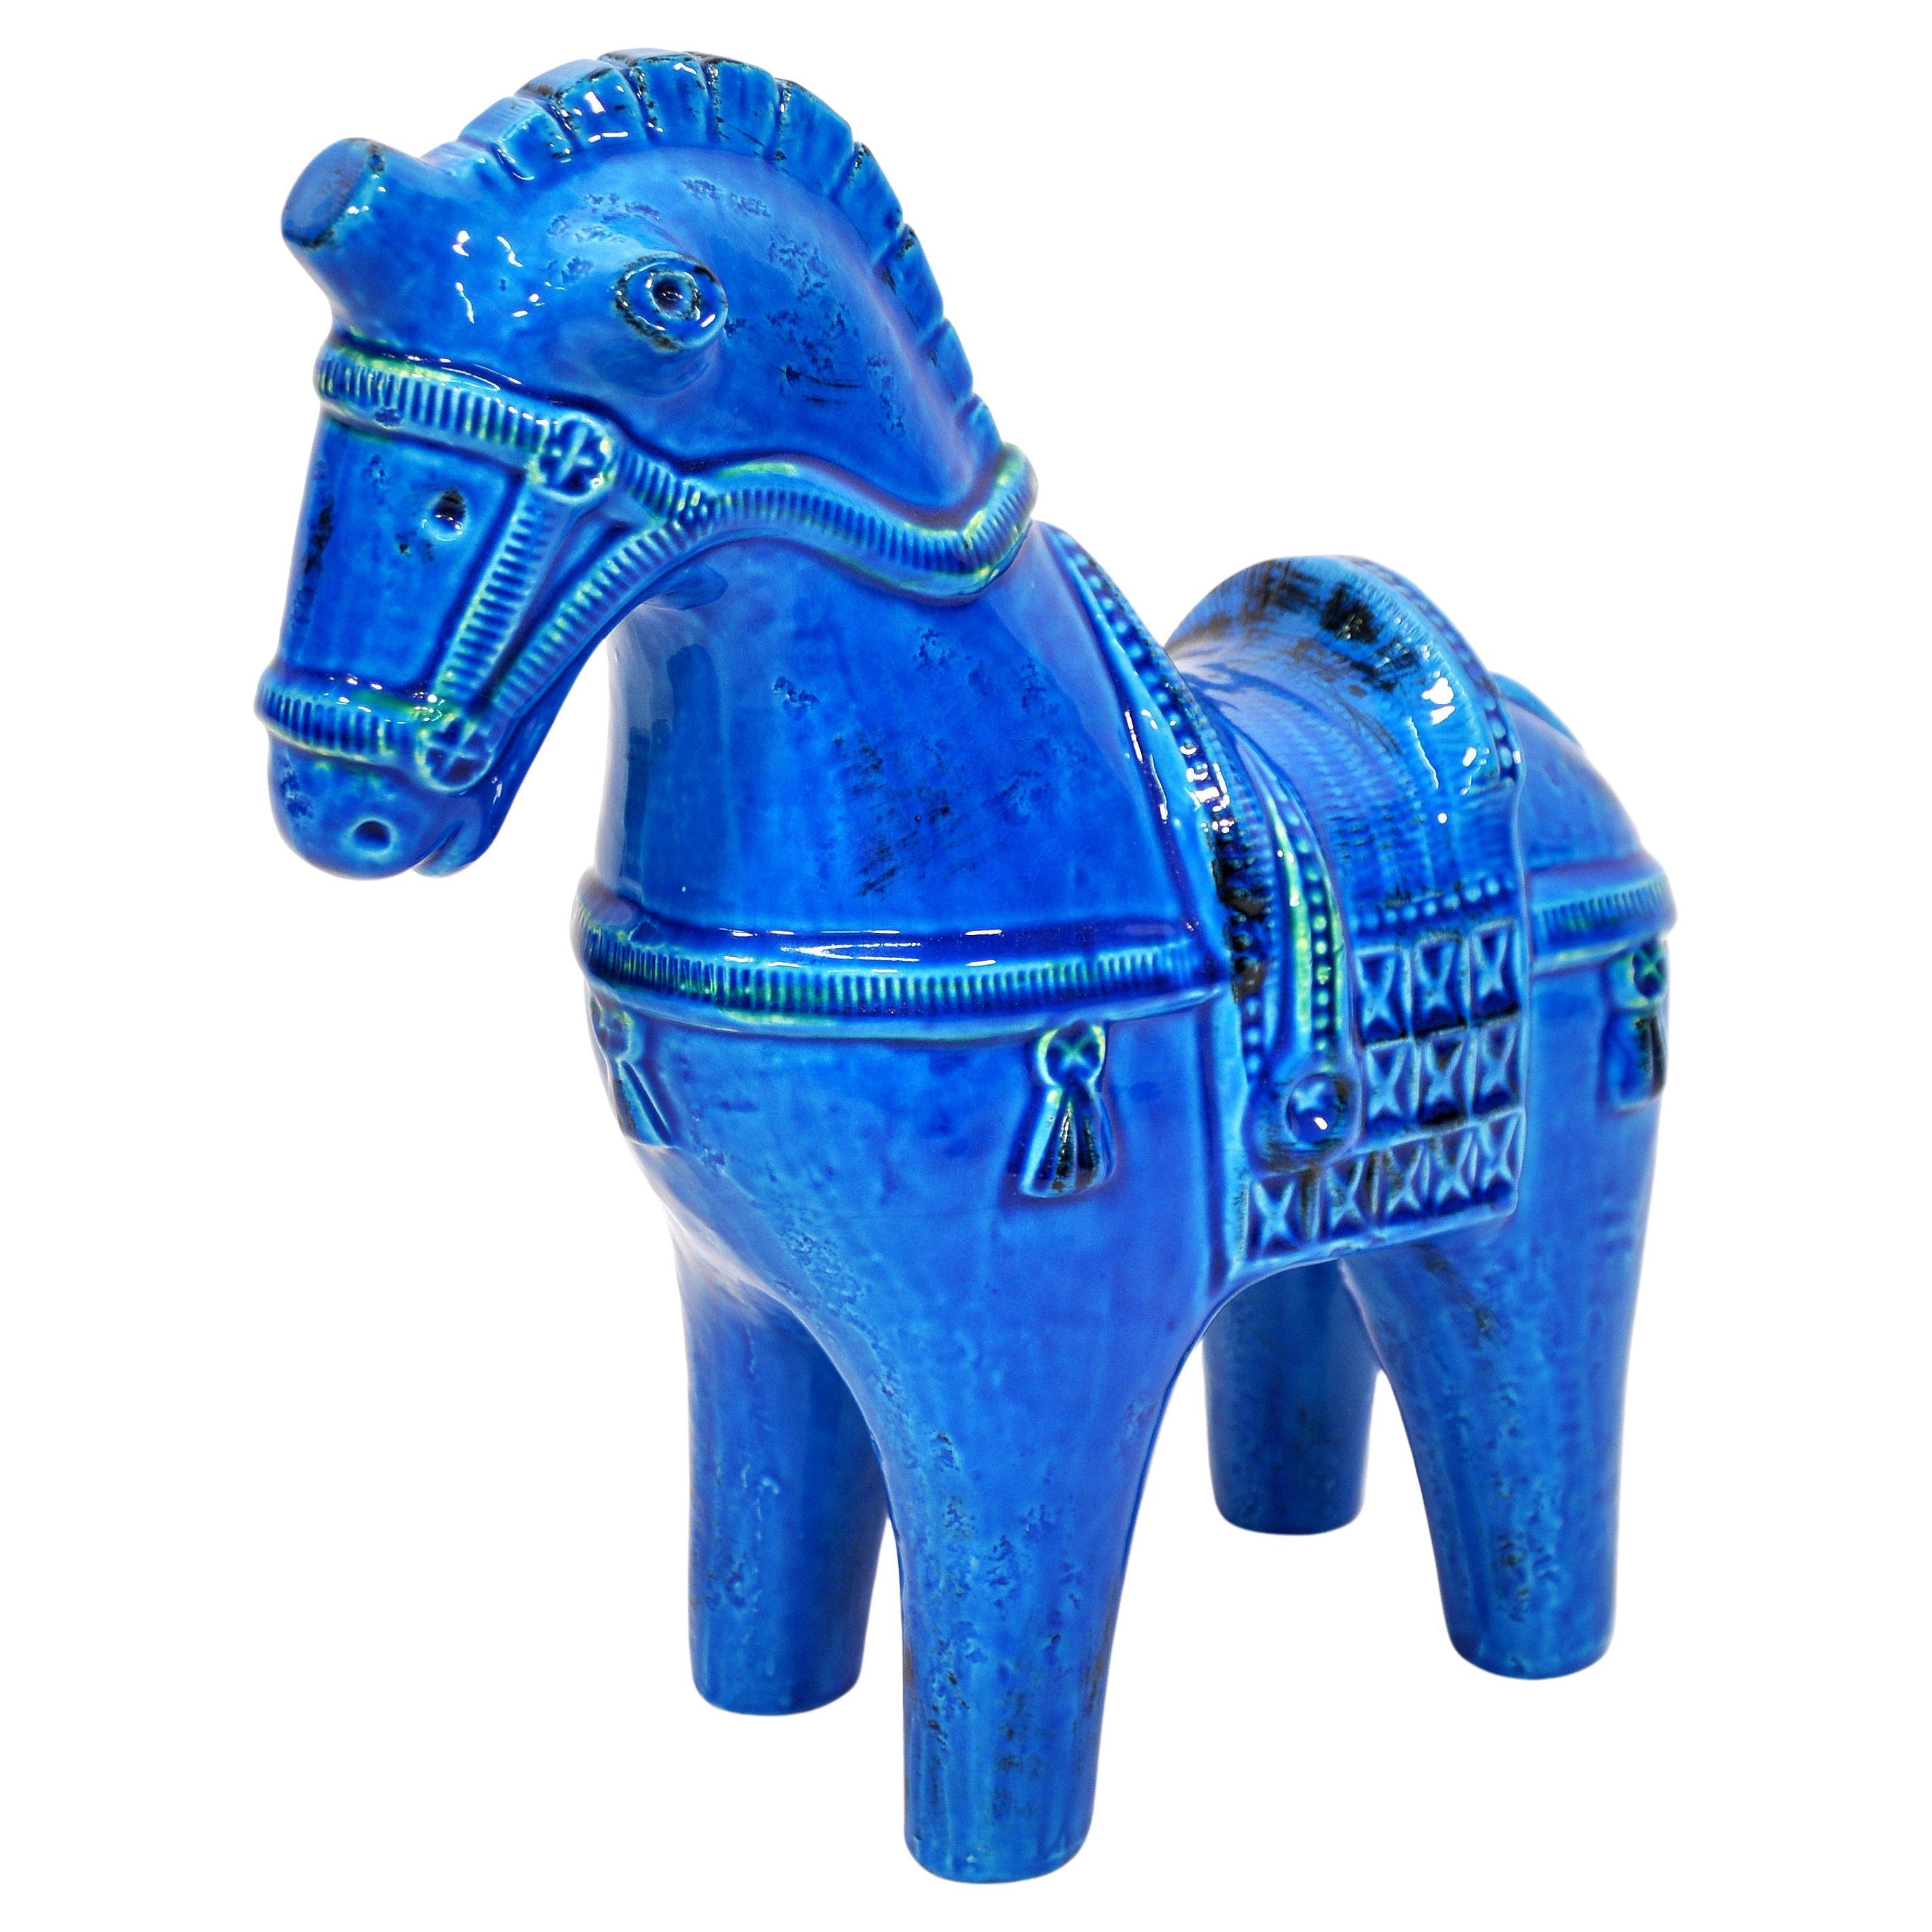 Große, handgefertigte italienische Pferdeskulptur aus Keramik in dem leuchtenden Blau von Aldo Londis ikonischer Keramikkollektion Rimini Blu, die ursprünglich 1959 für Bitossi Ceramiche entworfen und in den 1960er Jahren von Raymor importiert